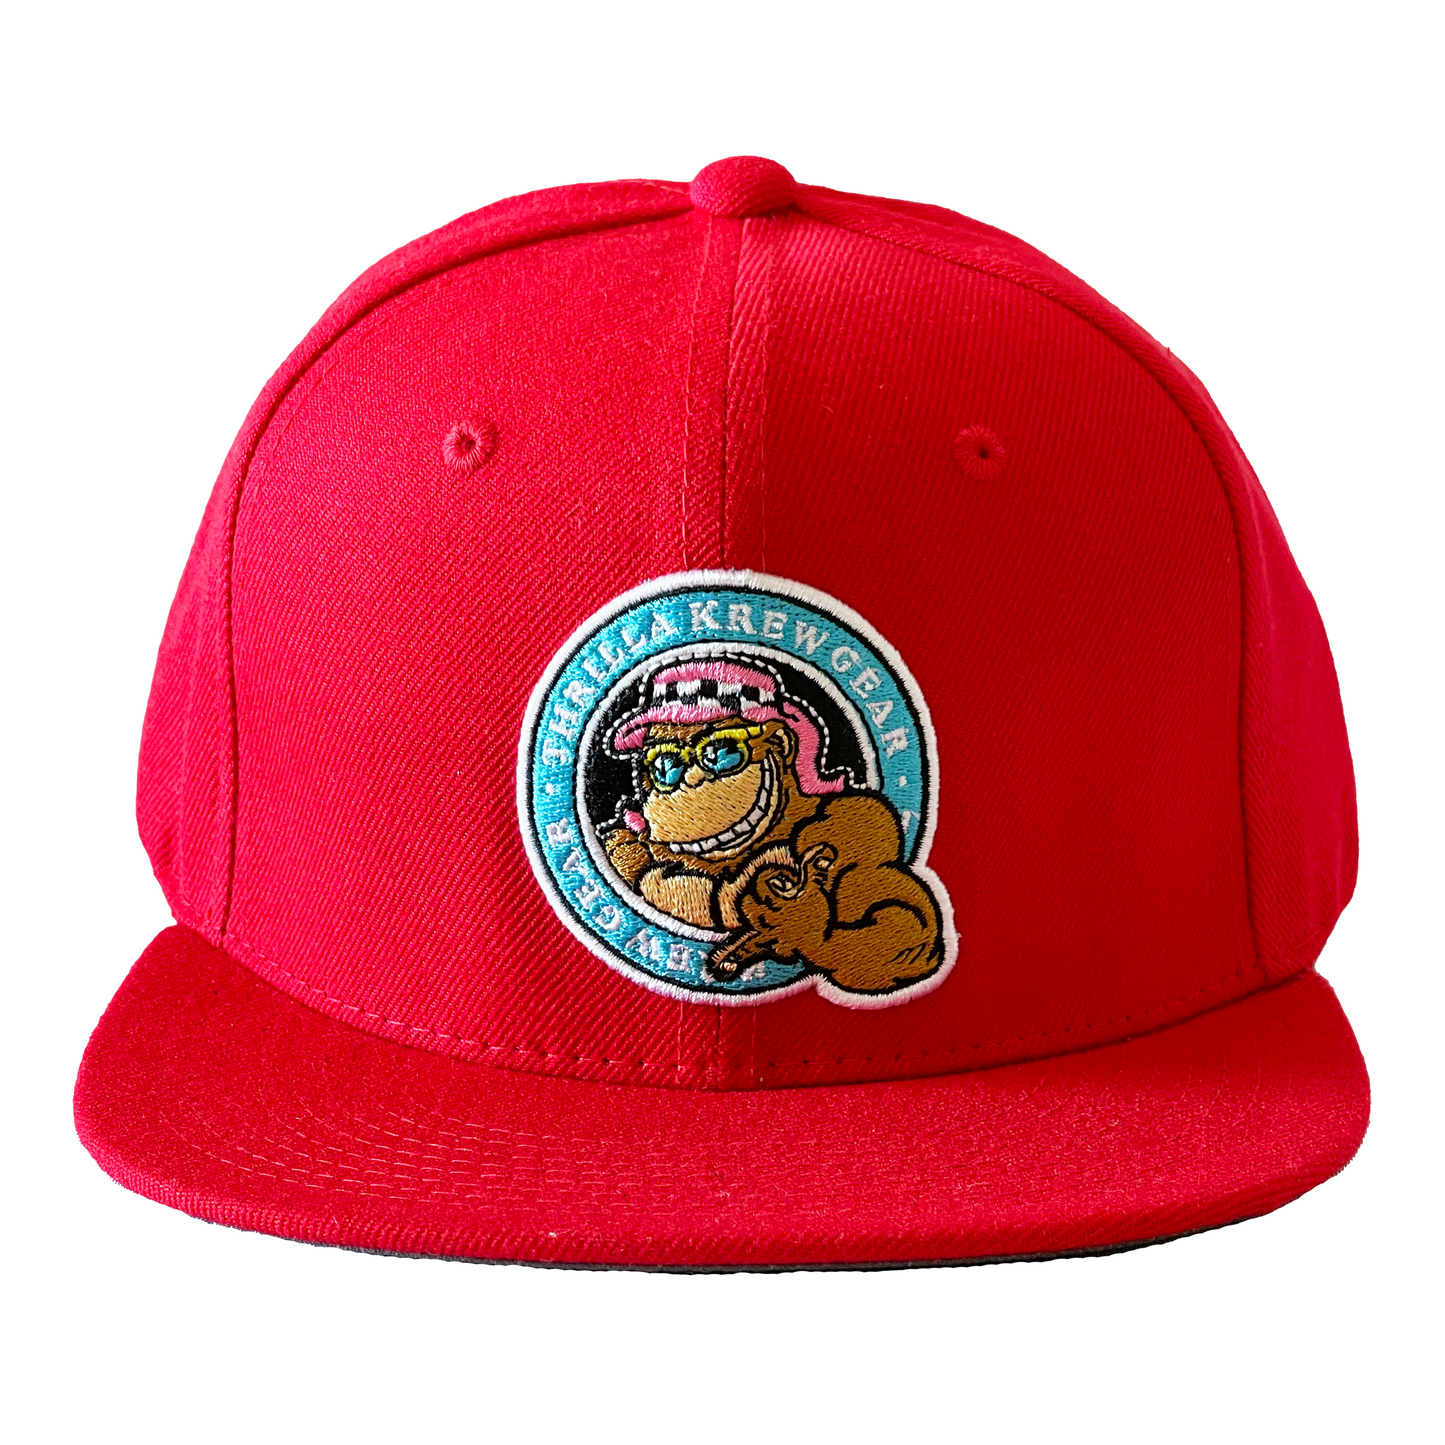 Dot logo hat